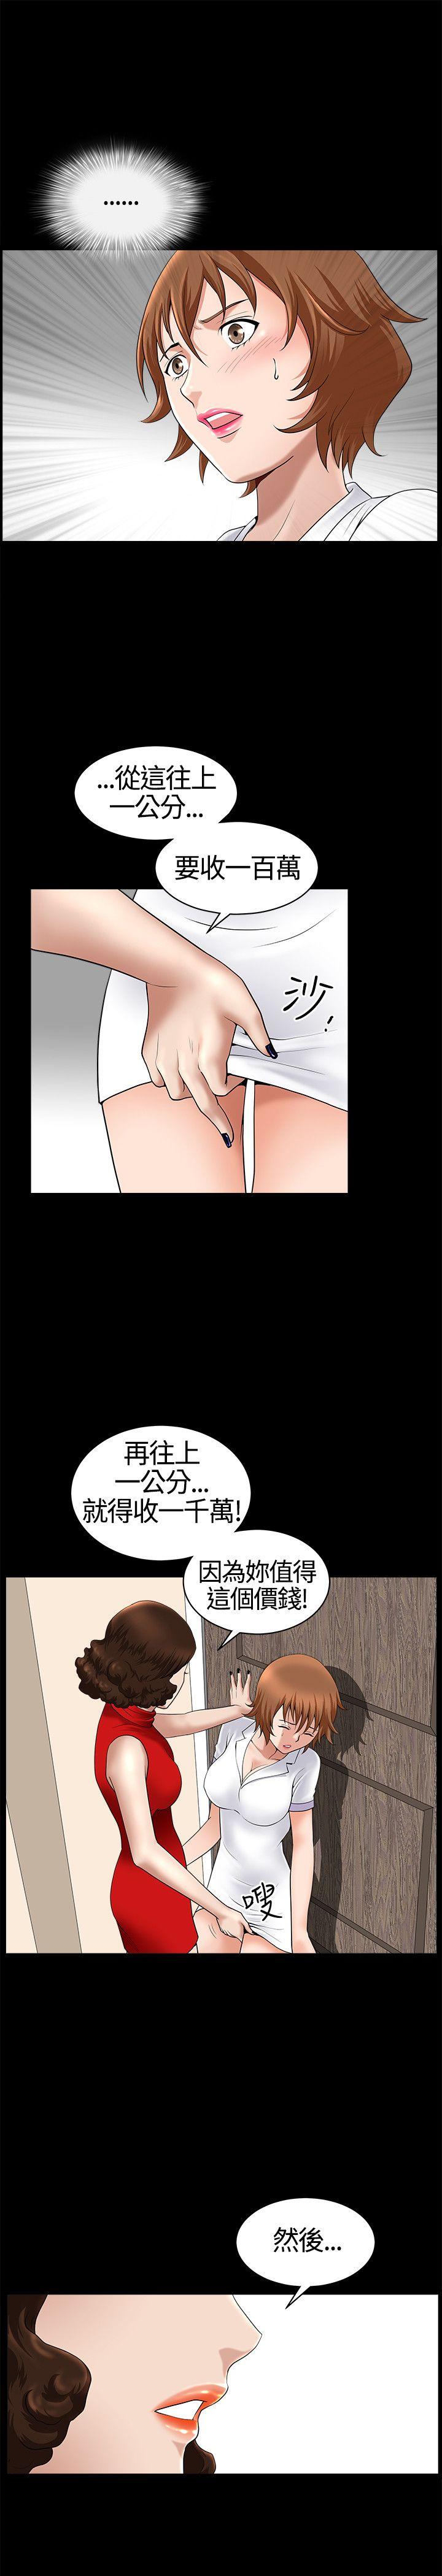 韩国污漫画 人妻性解放3:粗糙的手 第17话 19